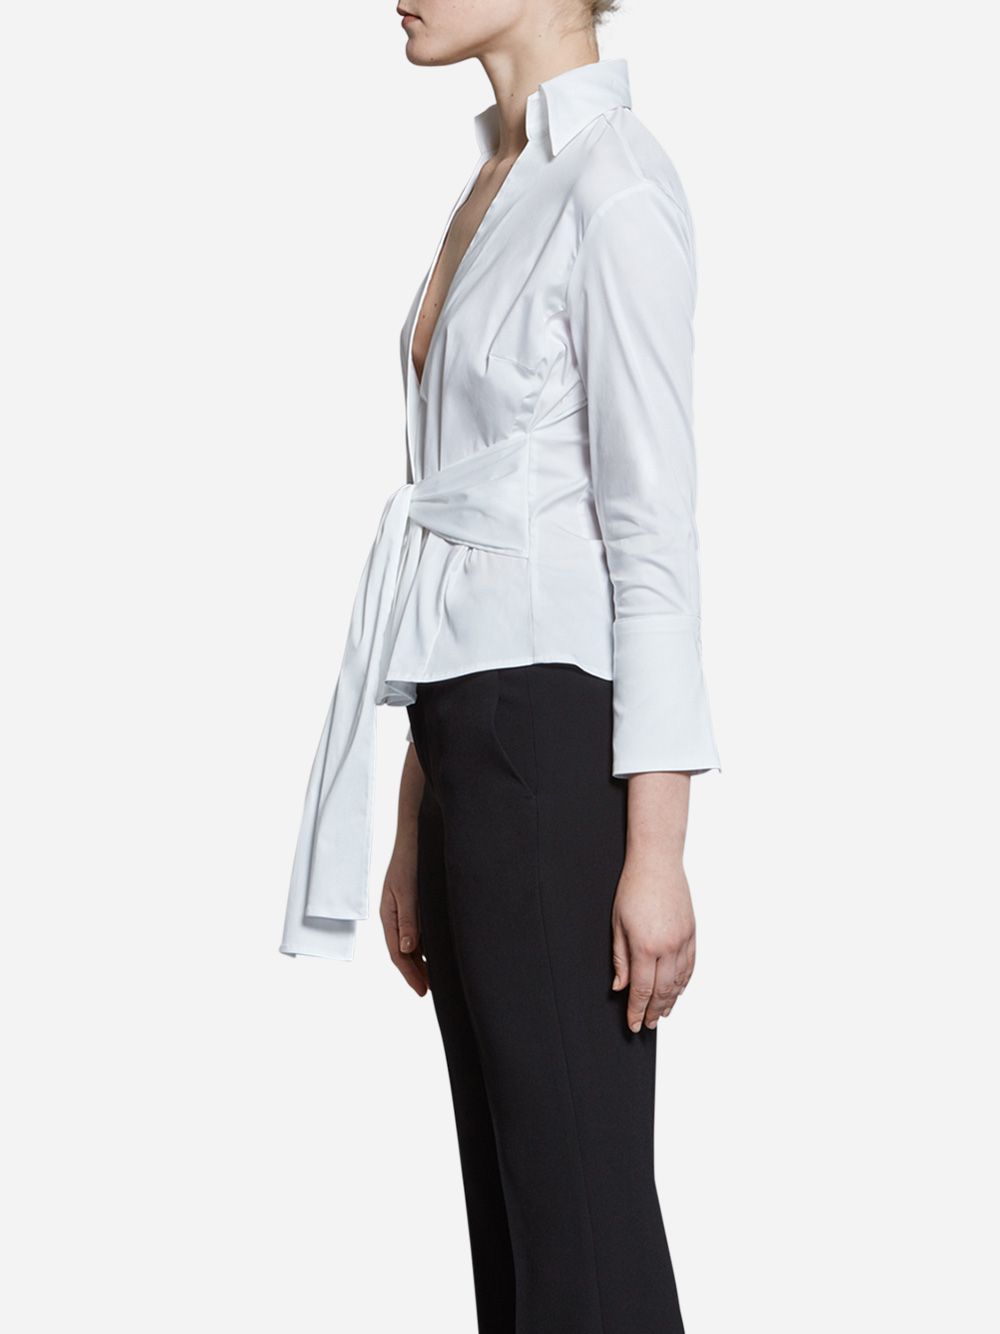 Blusa Branca Monica com Cinto | A-line Clothing